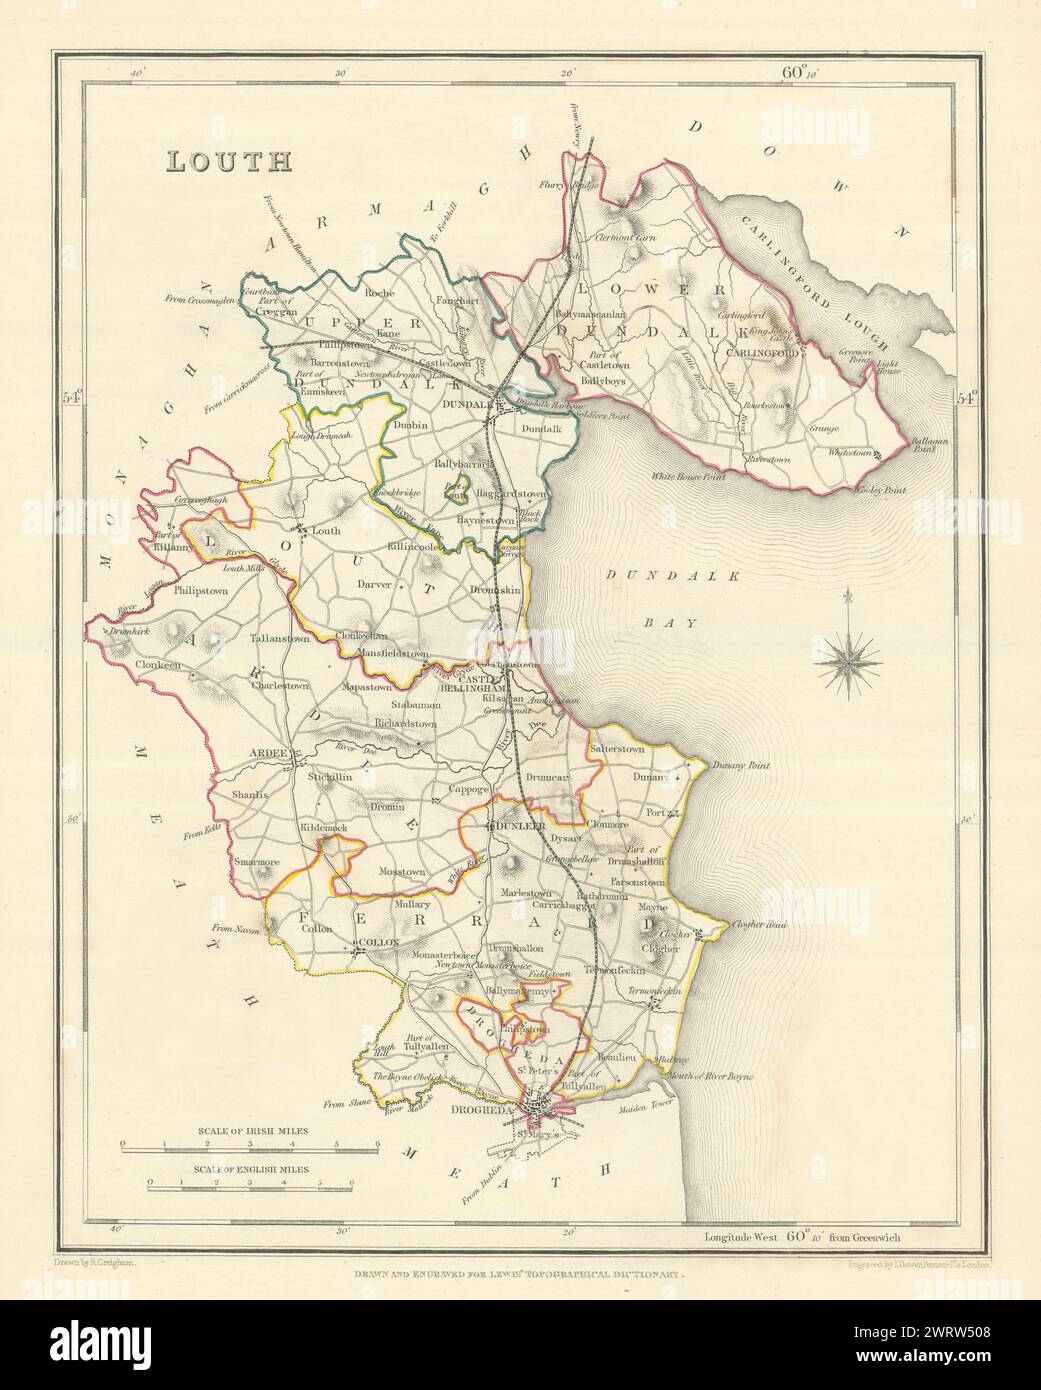 Mappa antica DELLA CONTEA DI LOUTH per LEWIS di CREIGHTON & DOWER. Irlanda 1850 anni Foto Stock